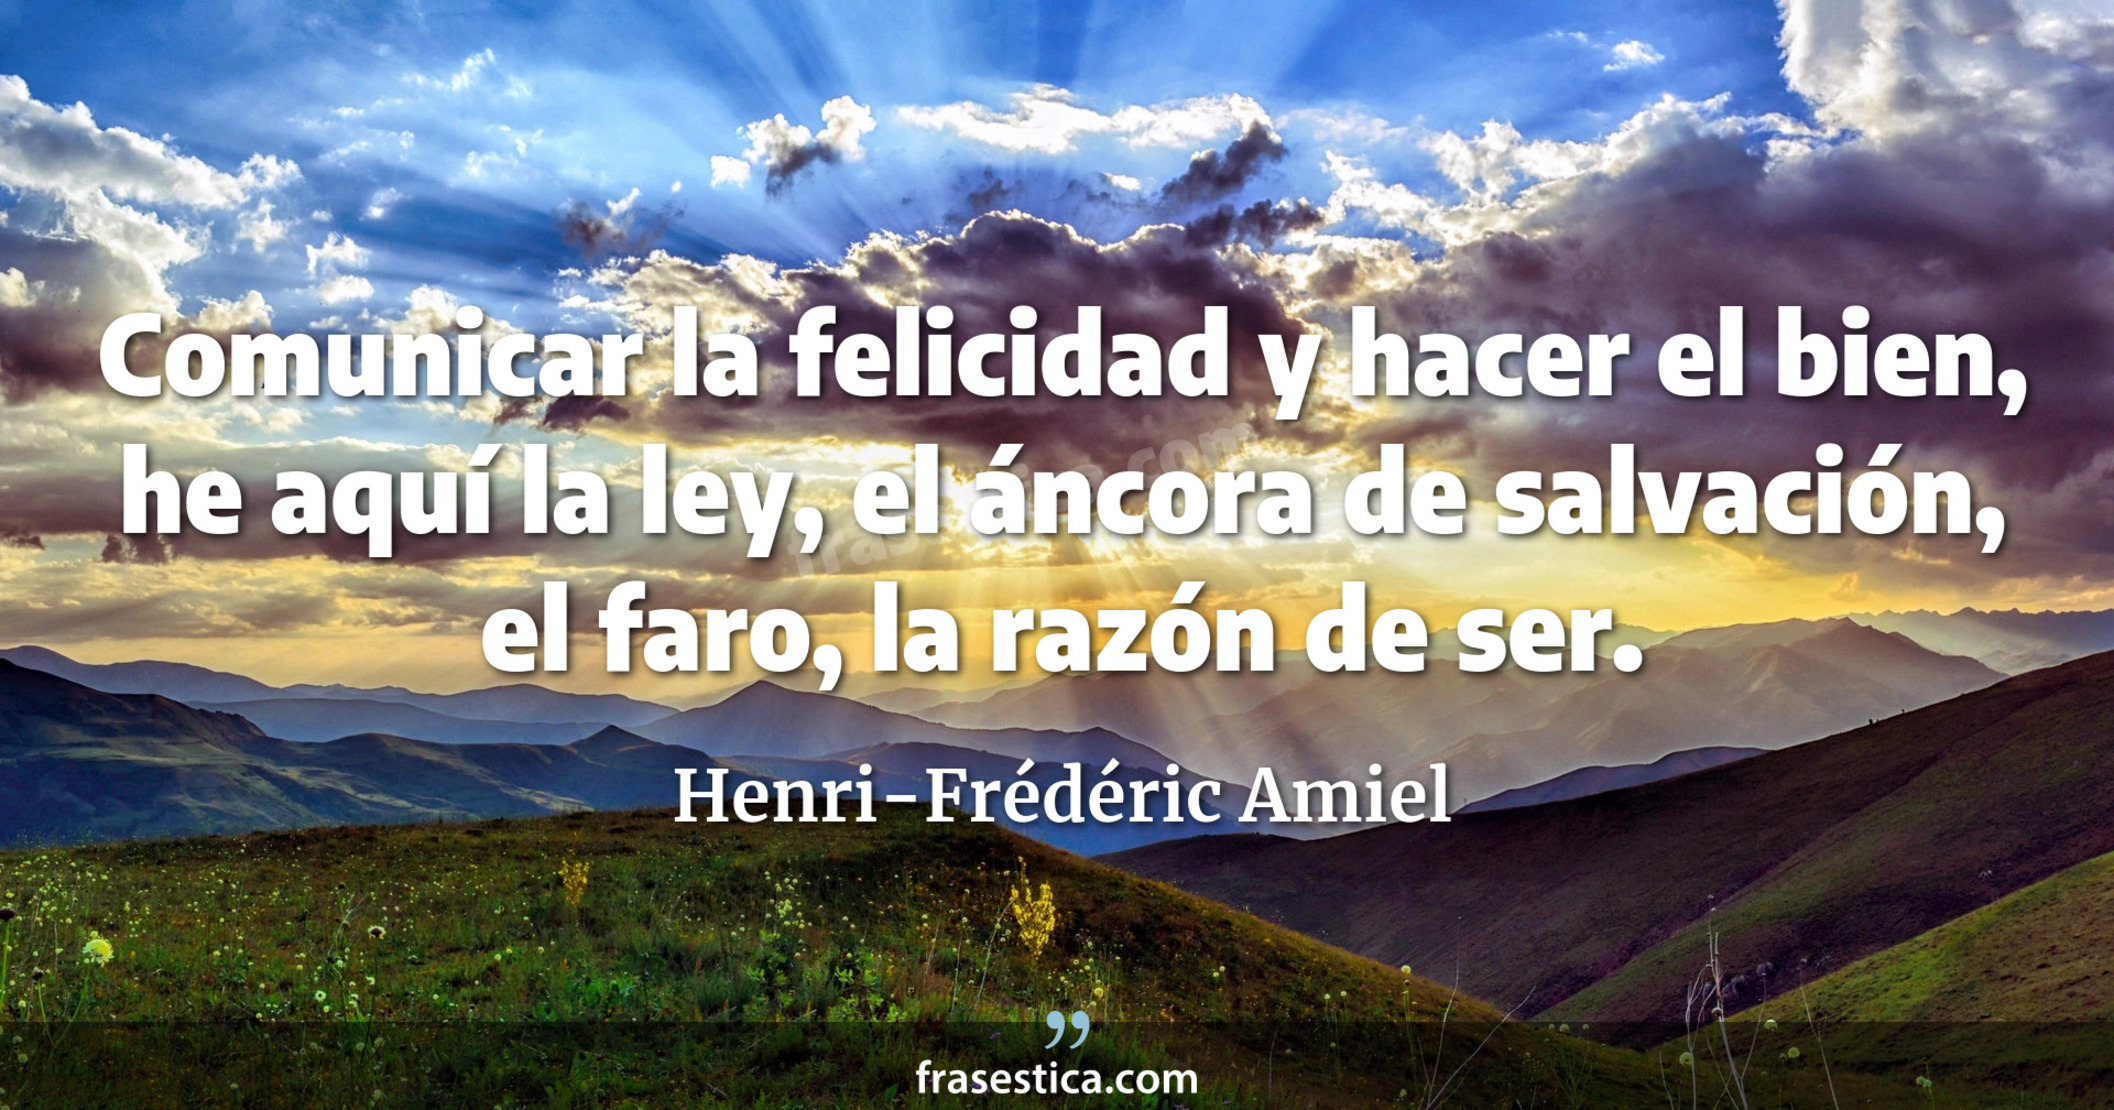 Comunicar la felicidad y hacer el bien, he aquí la ley, el áncora de salvación, el faro, la razón de ser. - Henri-Frédéric Amiel